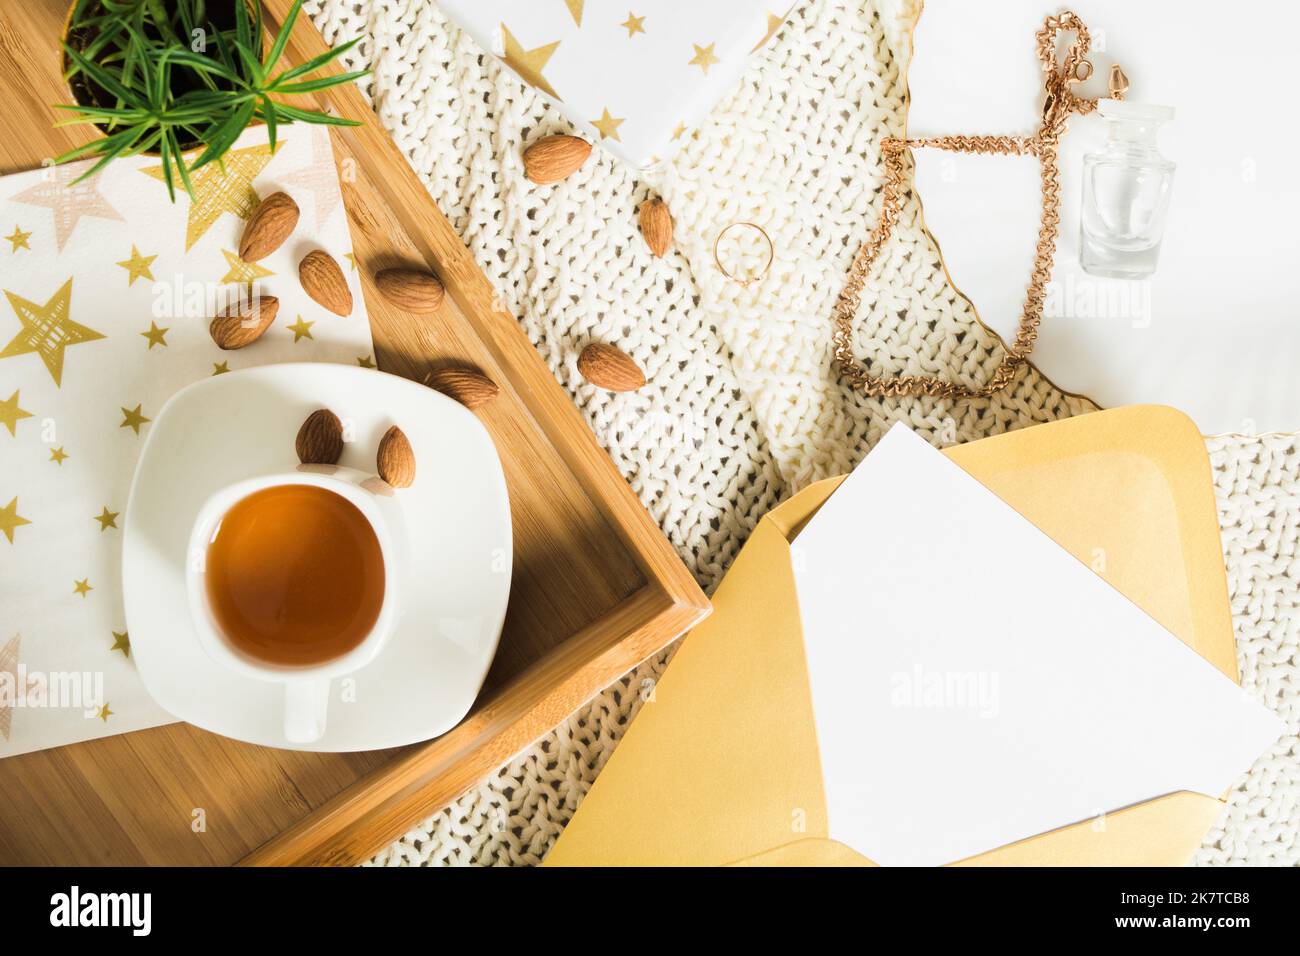 Herbst flach legen mit Tee auf Holztablett, Geschenkund Brief in goldenem Umschlag Stockfoto